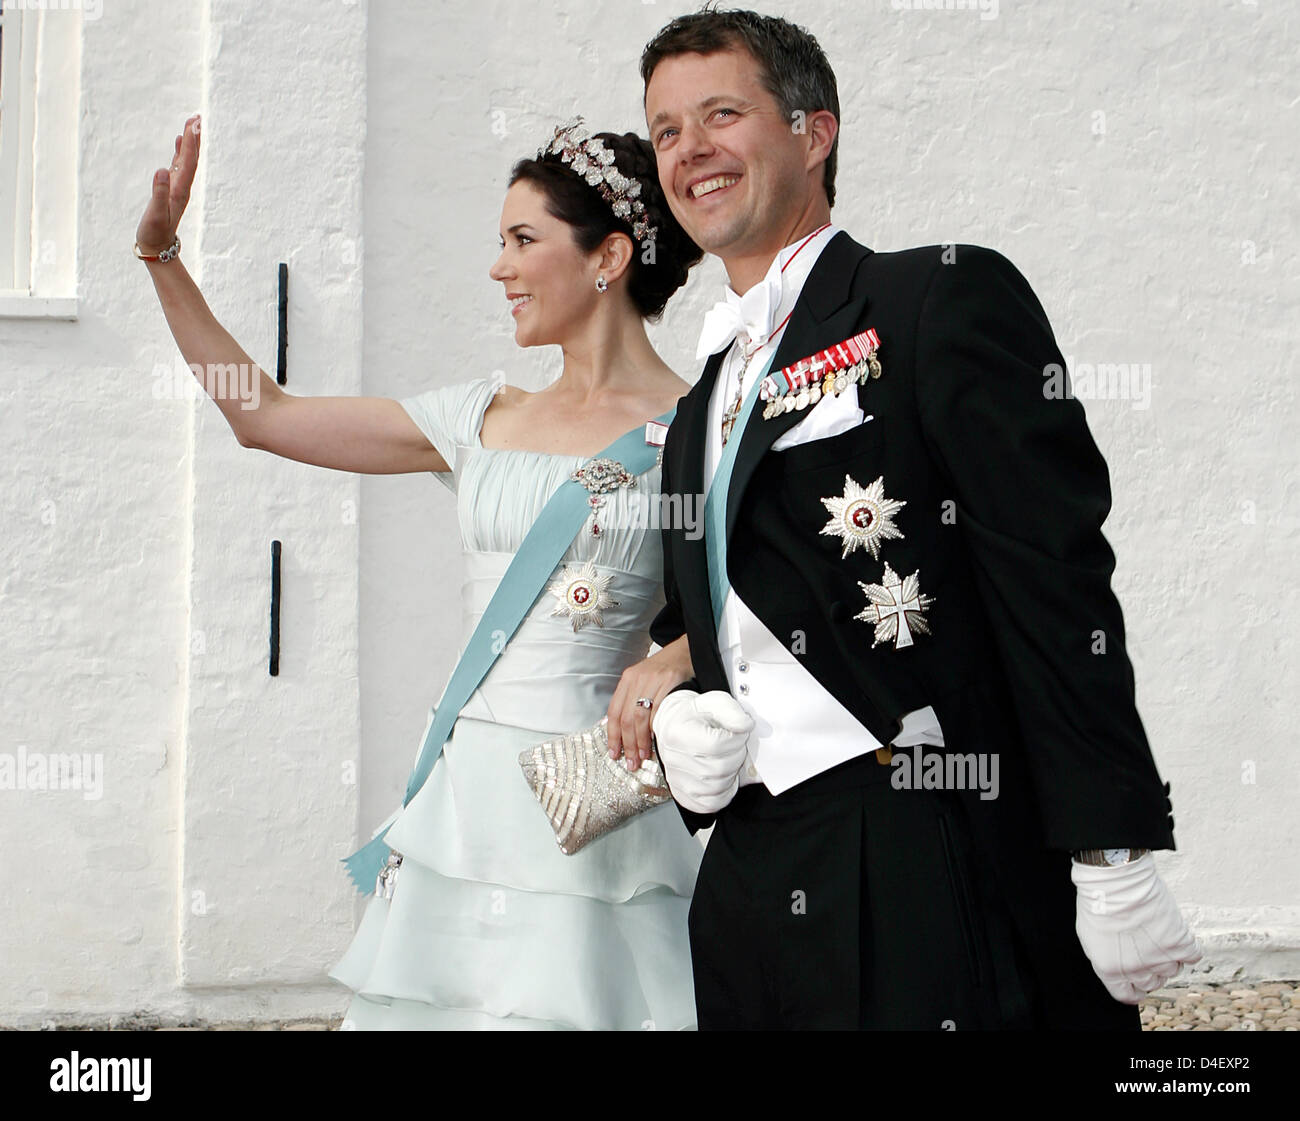 El príncipe Frederik de Dinamarca y su esposa, la Princesa María llegar a la boda del príncipe Joaquín y la princesa Marie Cavallier en la iglesia de Mogeltonder, Dinamarca, 24 de mayo de 2008. Foto: Kay Nietfeld Foto de stock